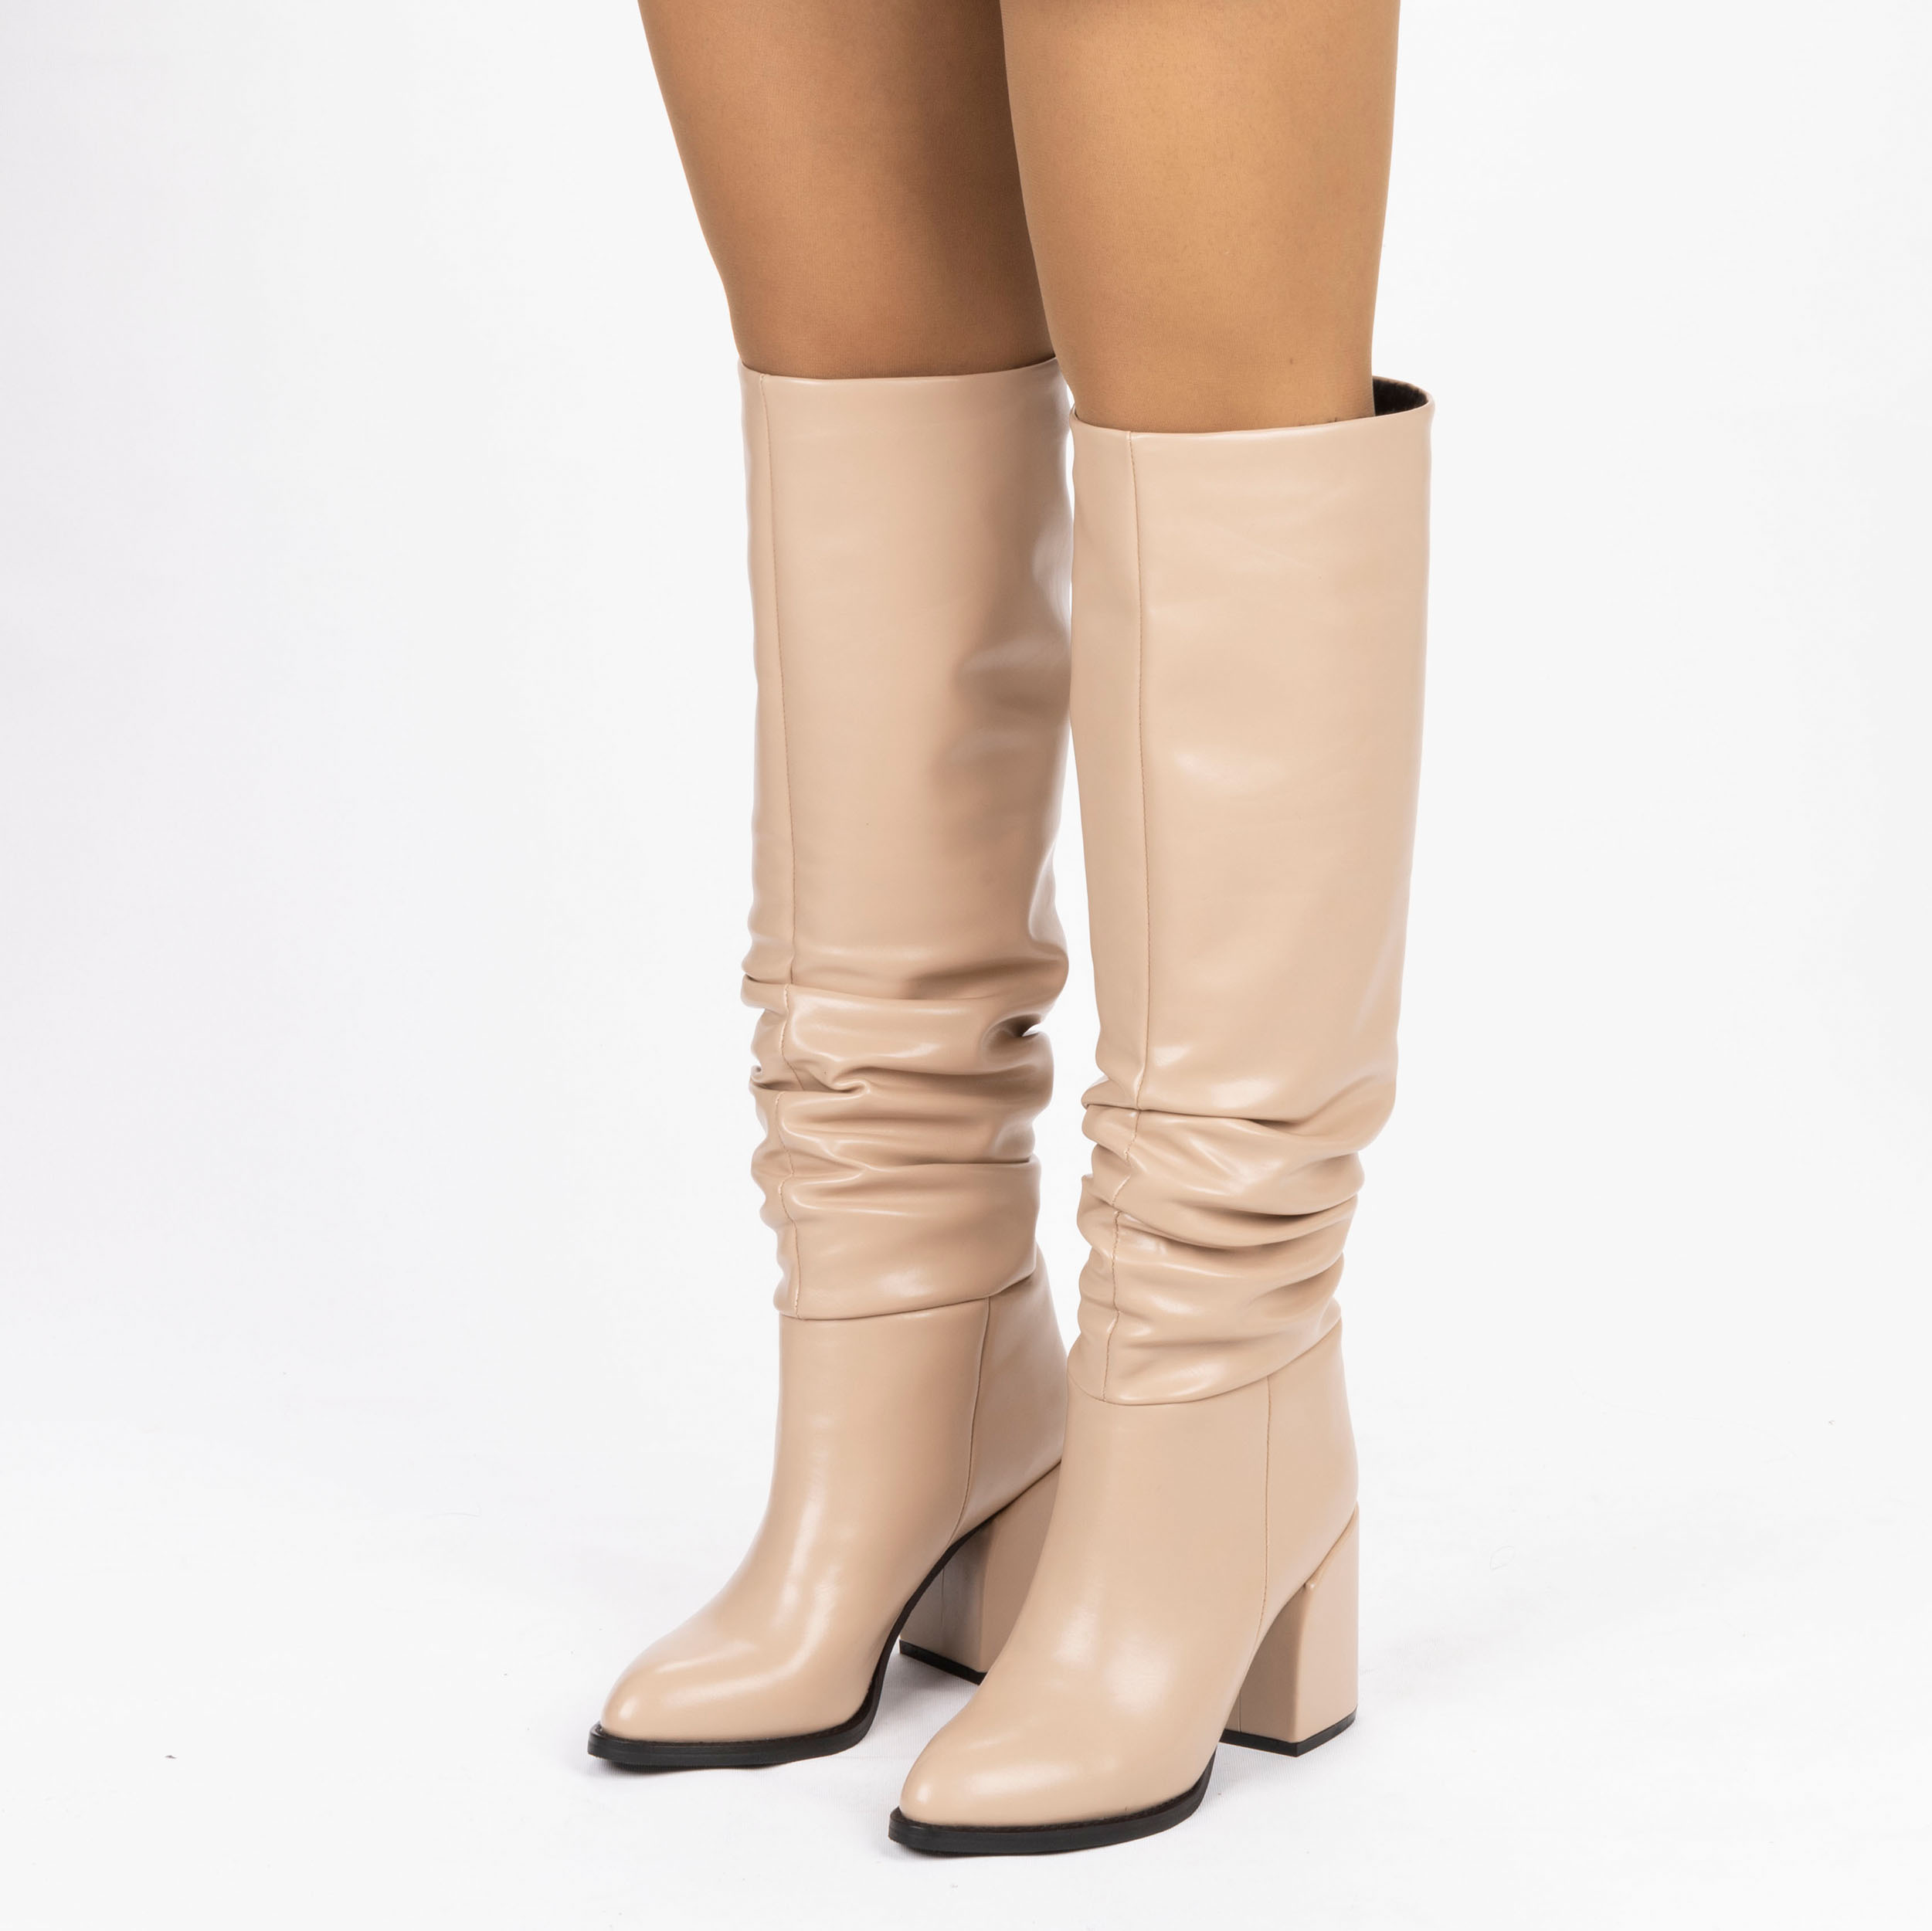 Kadın Sivri Burunlu Kalın Topuklu Körüklü Diz Altı Çizme, Renk: Nude - Cilt, Beden: 37